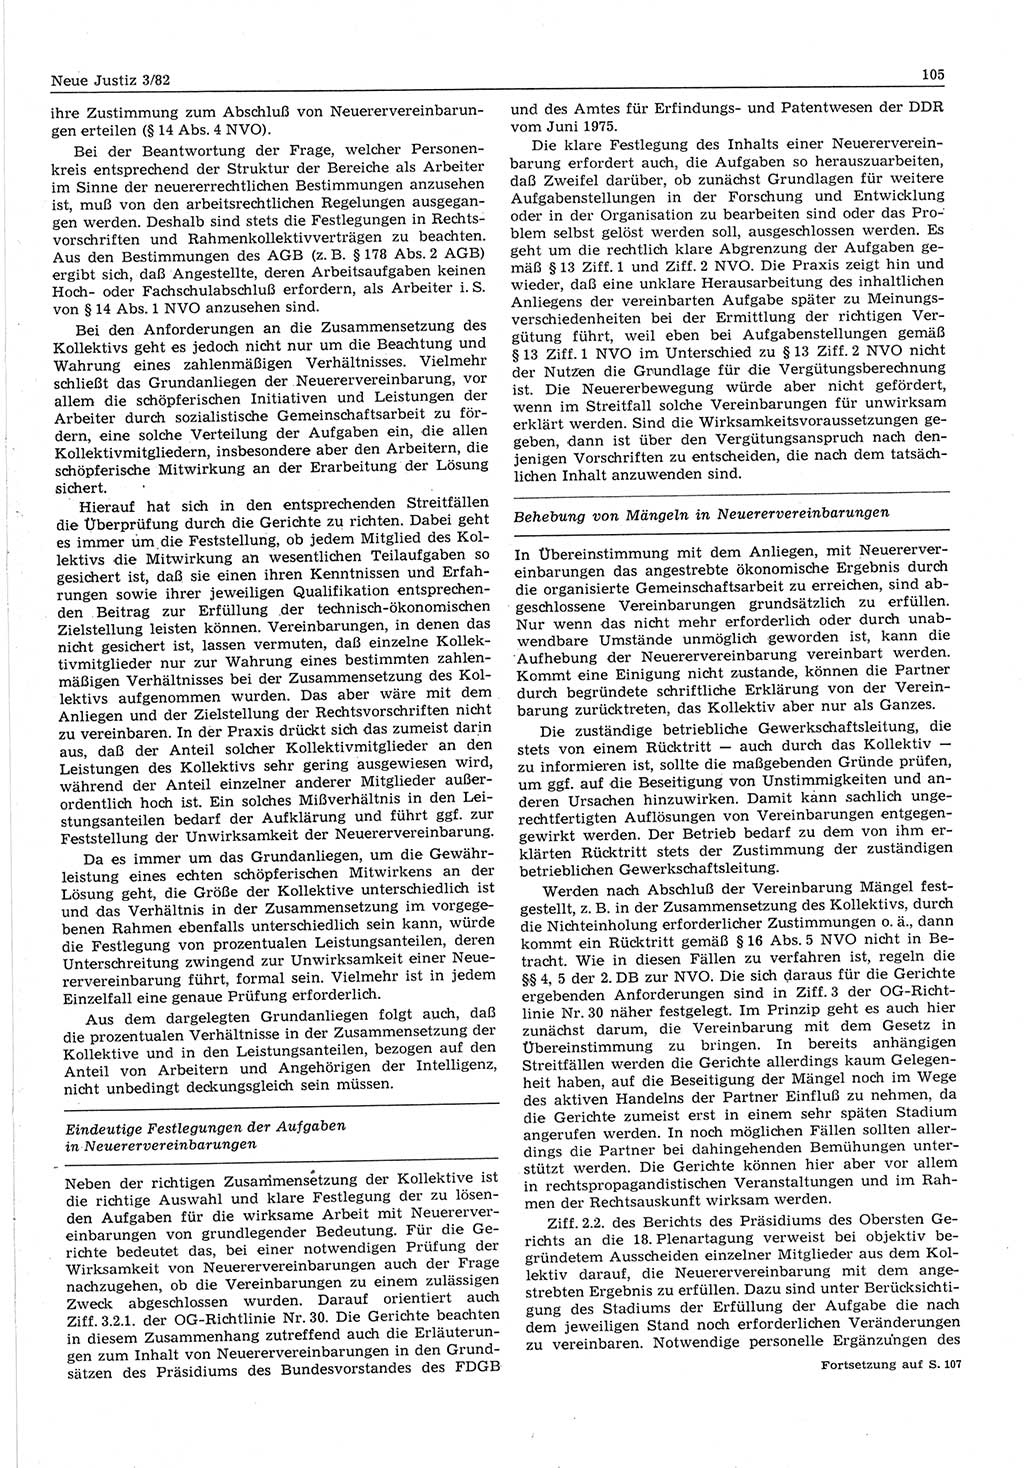 Neue Justiz (NJ), Zeitschrift für sozialistisches Recht und Gesetzlichkeit [Deutsche Demokratische Republik (DDR)], 36. Jahrgang 1982, Seite 105 (NJ DDR 1982, S. 105)